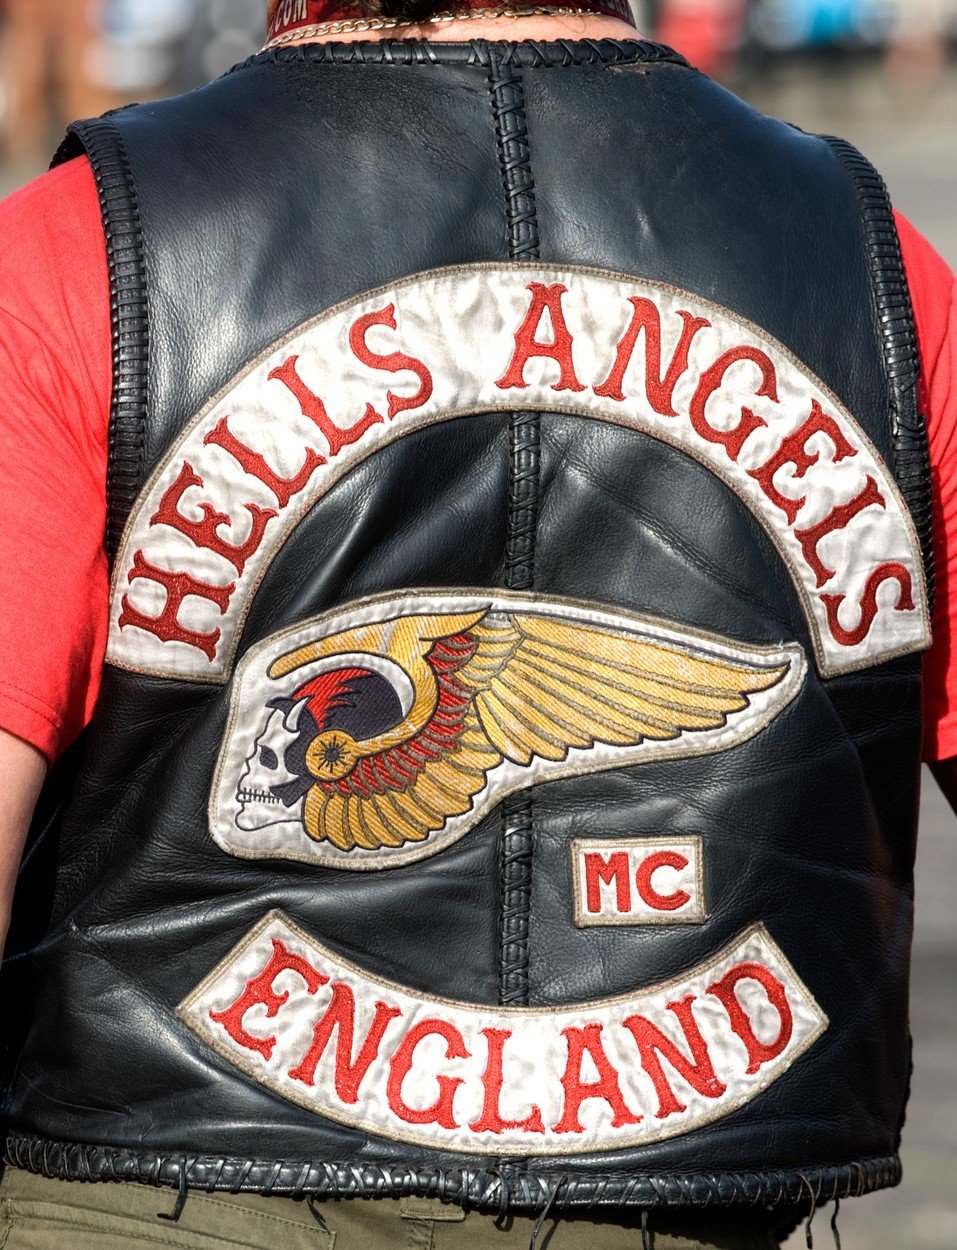 Během koncertu Rolling Stones v roce 1969 členové motorkářského gangu Hells Angels smrtelně pobodali mladého černocha Mereditha Huntera. 